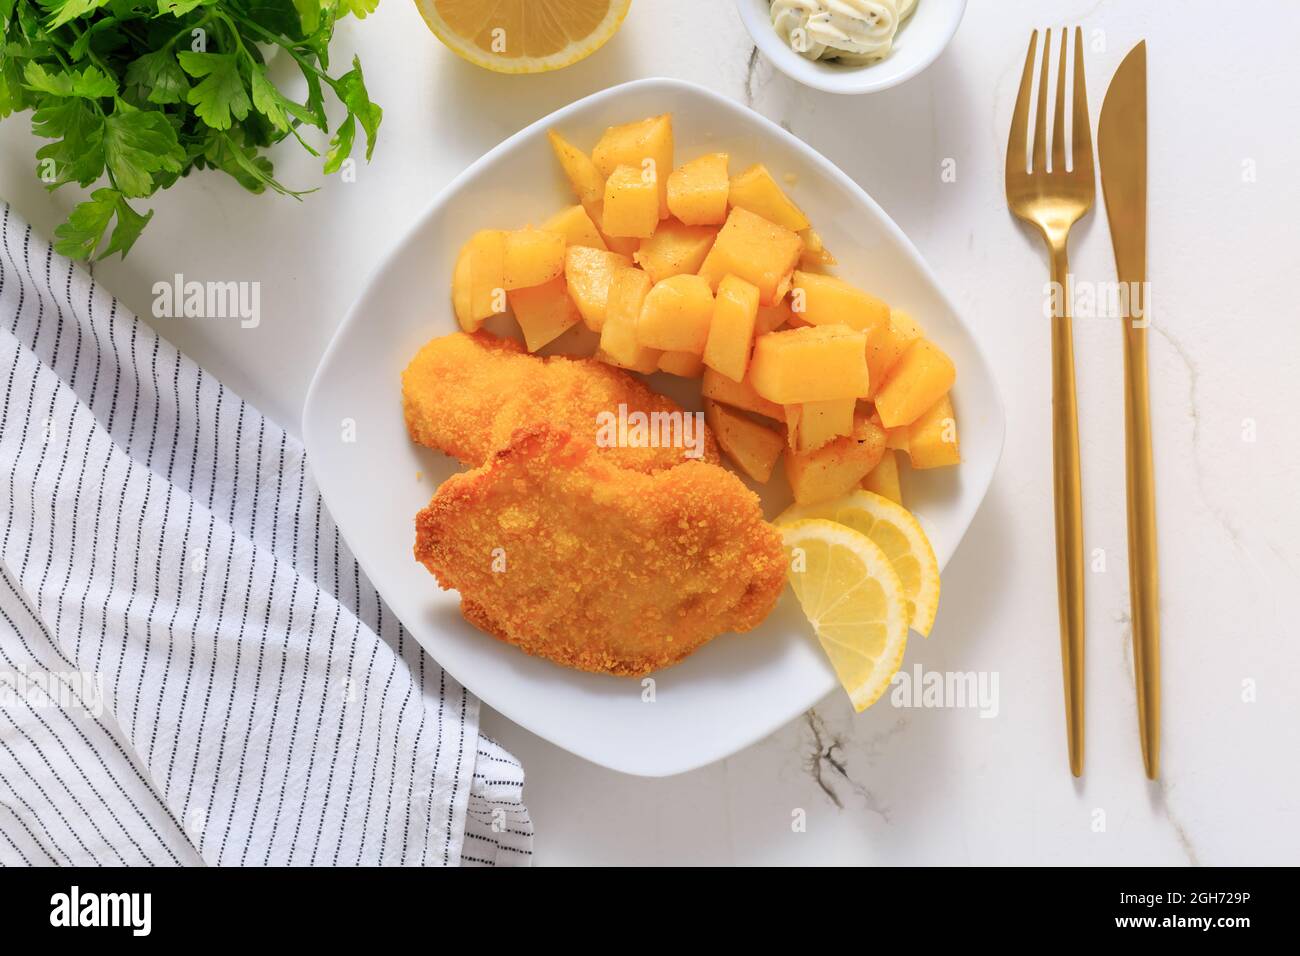 Escalope de poulet maison avec pommes de terre au four, mayonnaise et  citron Photo Stock - Alamy